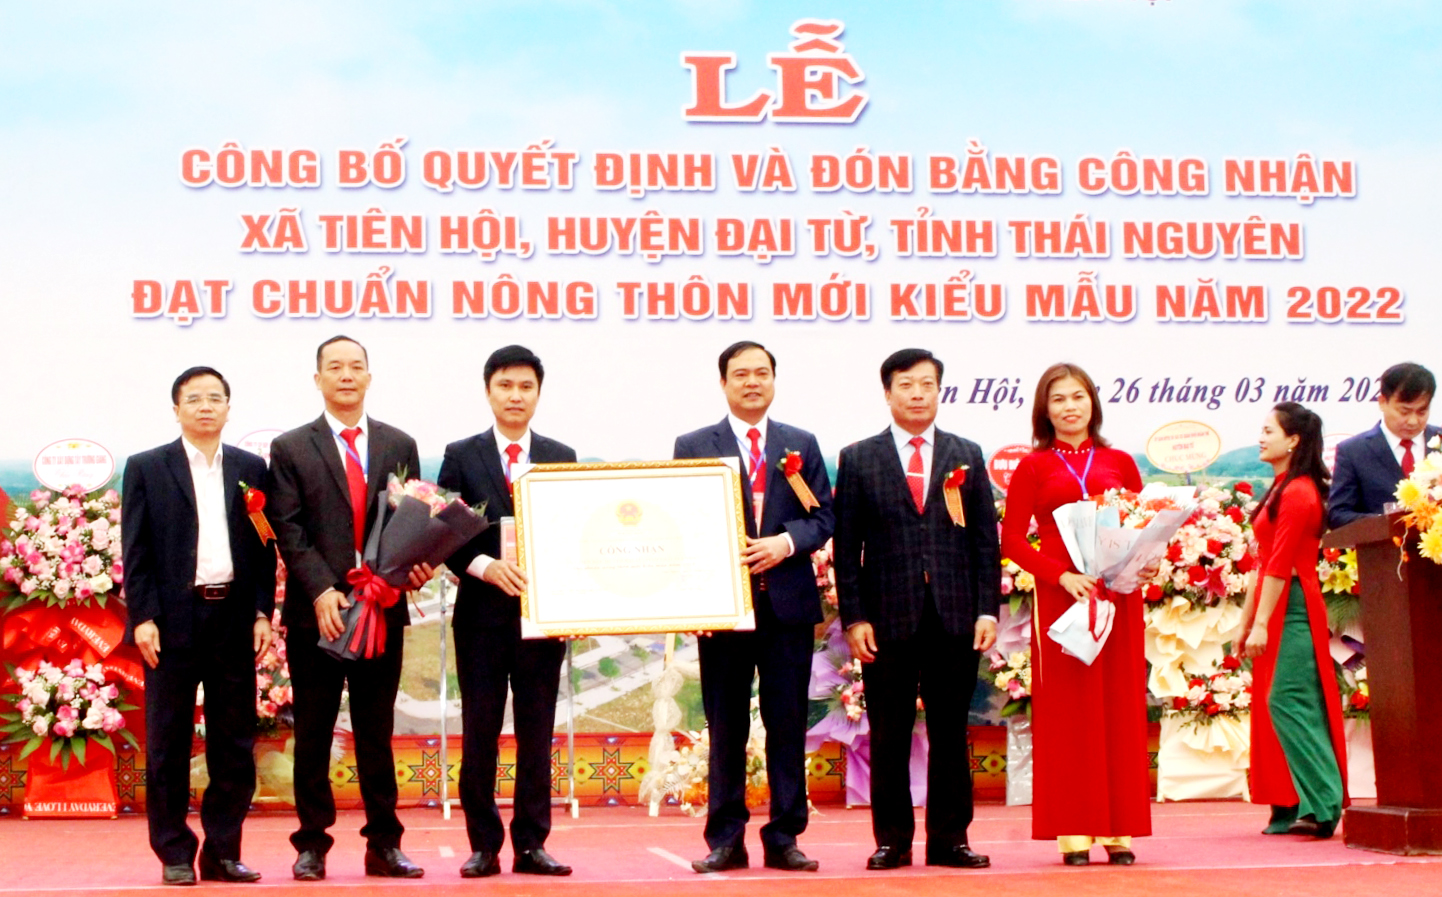 Lãnh đạo huyện Đại Từ trao Bằng công nhận xã nông thôn mới kiểu mẫu của UBND tỉnh cho xã Tiên Hội.